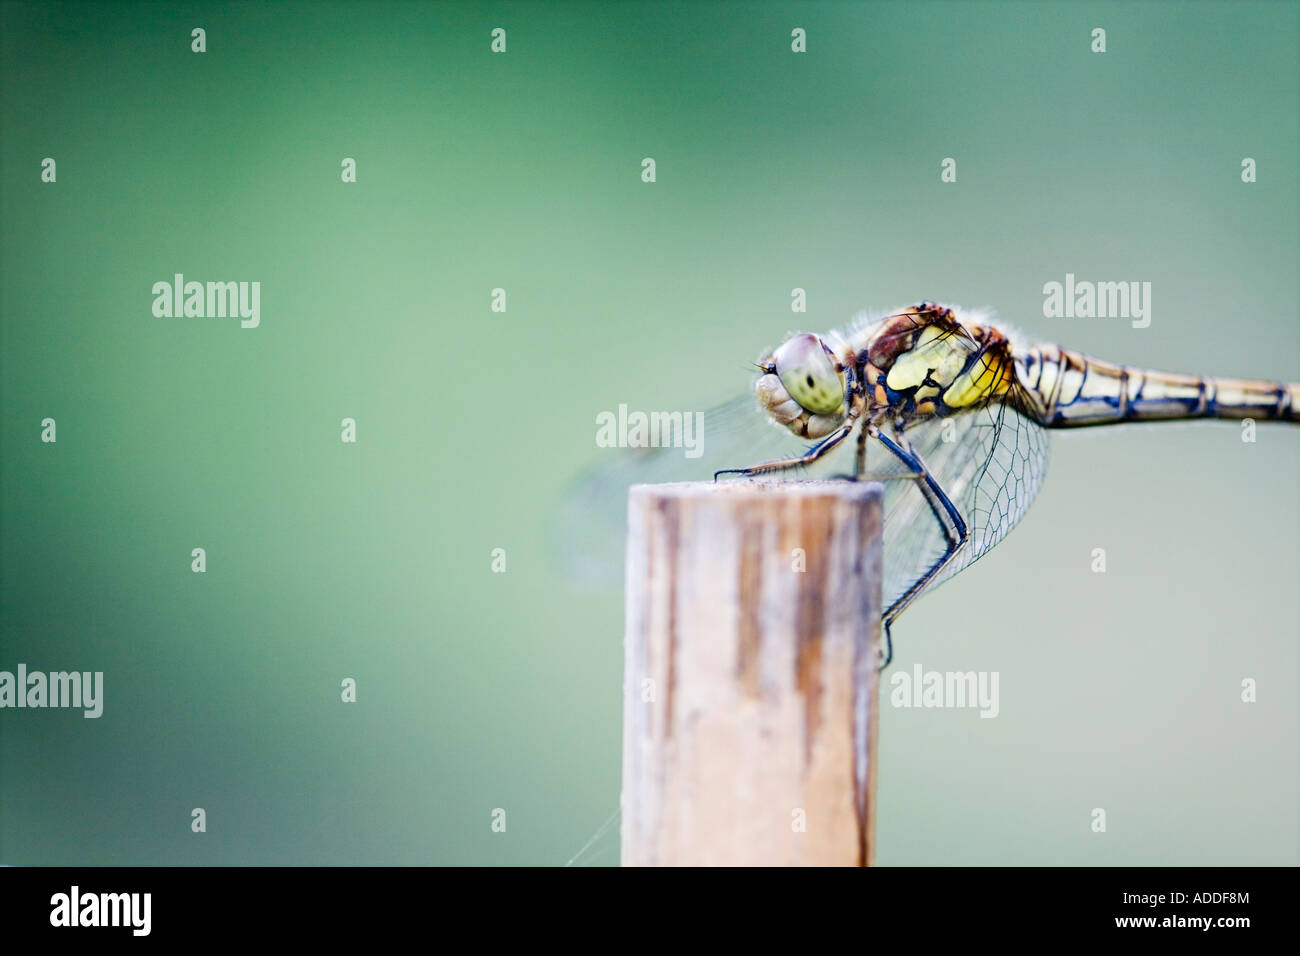 Sympetrum Striolatum. Weibliche gemeinsame Darter Libelle auf einer alten Bambusrohr in einem englischen Garten Stockfoto